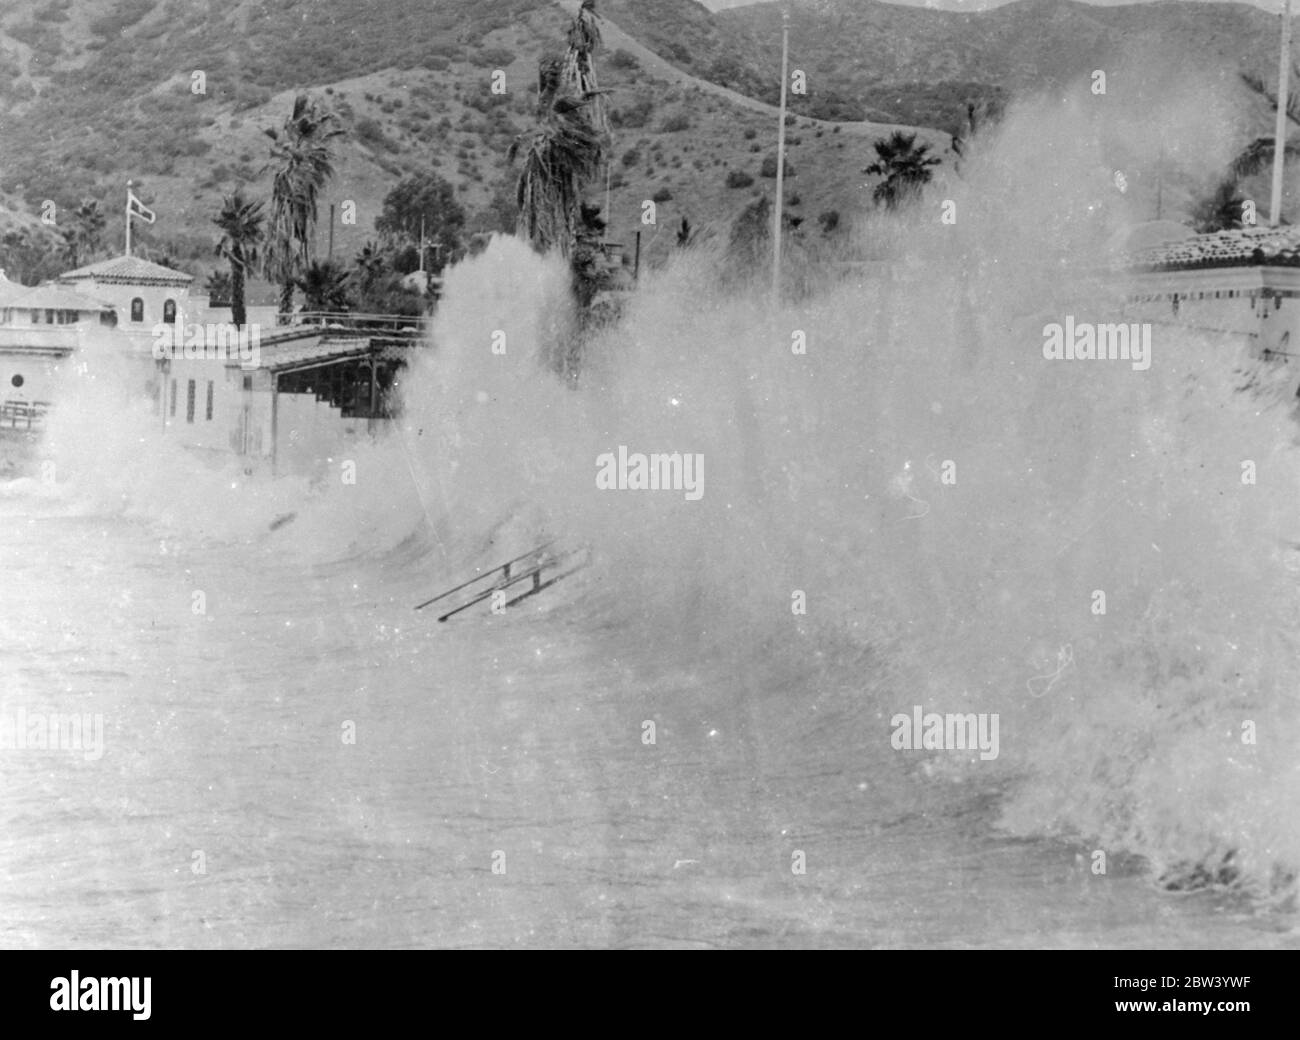 Racing sieht Pfund kalifornischen Resort in einem tollen Sturm. Das normalerweise ruhige westliche von Avalon Bay auf Santa Catalina Island, Kalifornien, wo in brüllende Berge von Schaum durch 50 Meilen pro Stunde Sturm aus Nordosten gepeitscht. Die berühmte Promenade und die Gebäude entlang der Uferpromenade des Resorts wurden von den tosenden Meeren geknallt. Foto zeigt: Die gewaltigen Wellen brechen über die Front in Avalon Bay. 11 Dezember 1936 Stockfoto